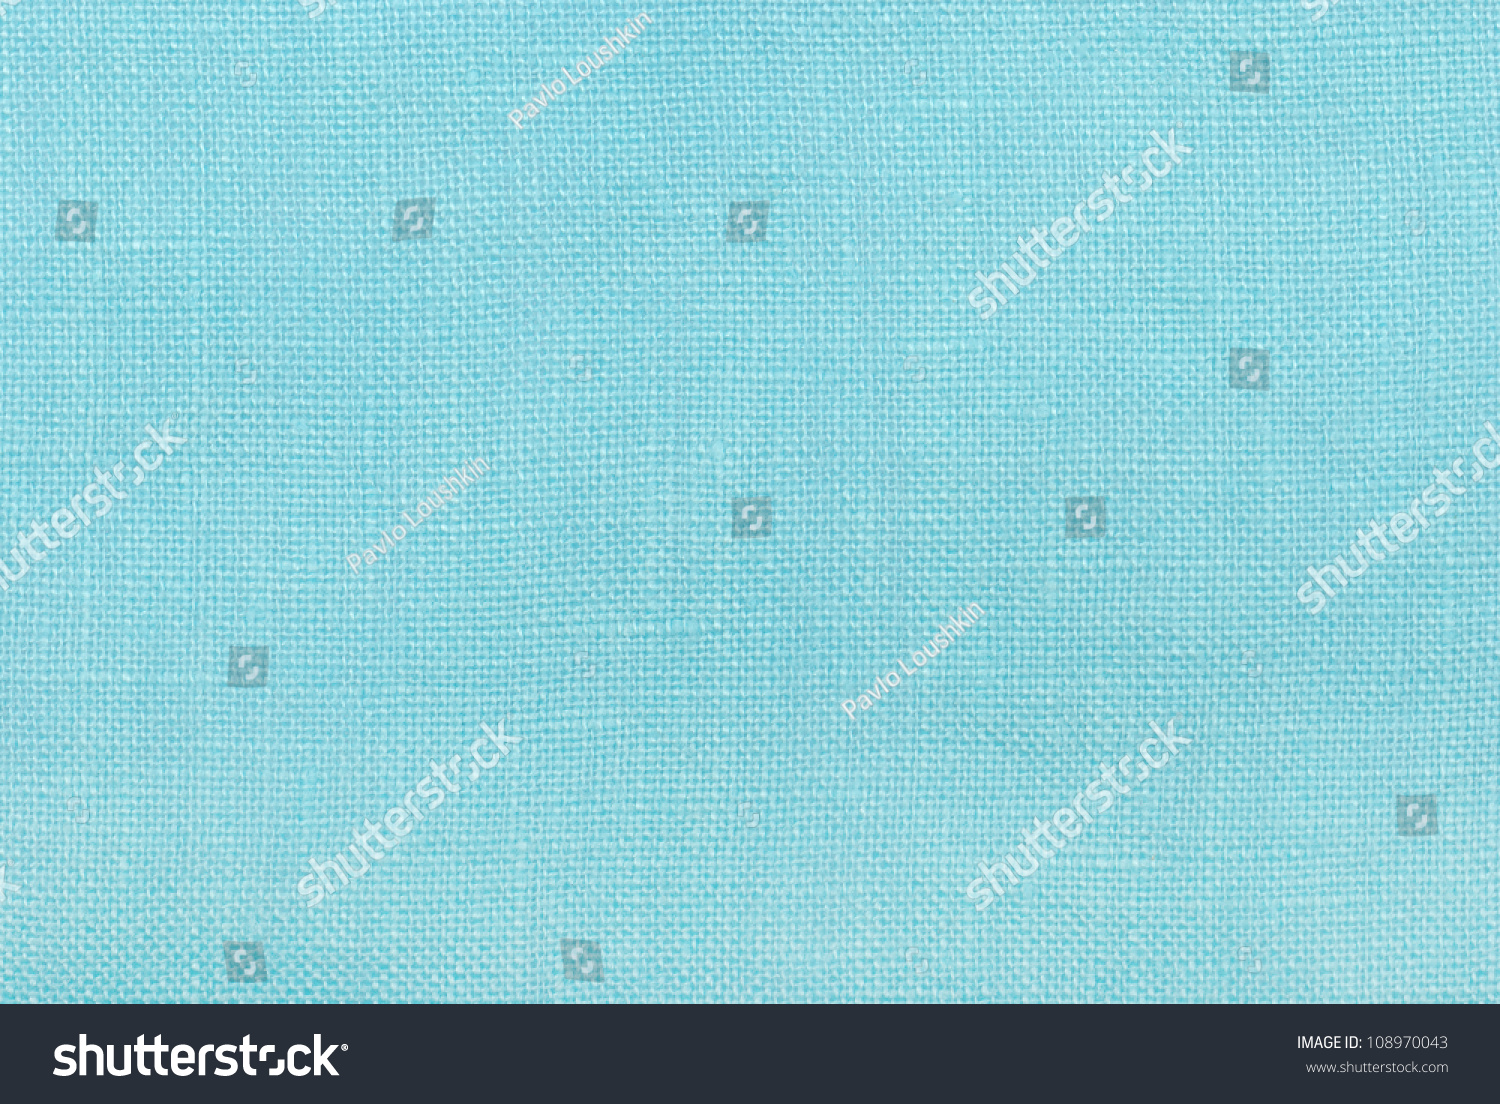 Blue Linen Texture Background Stock Photo 108970043 - Shutterstock